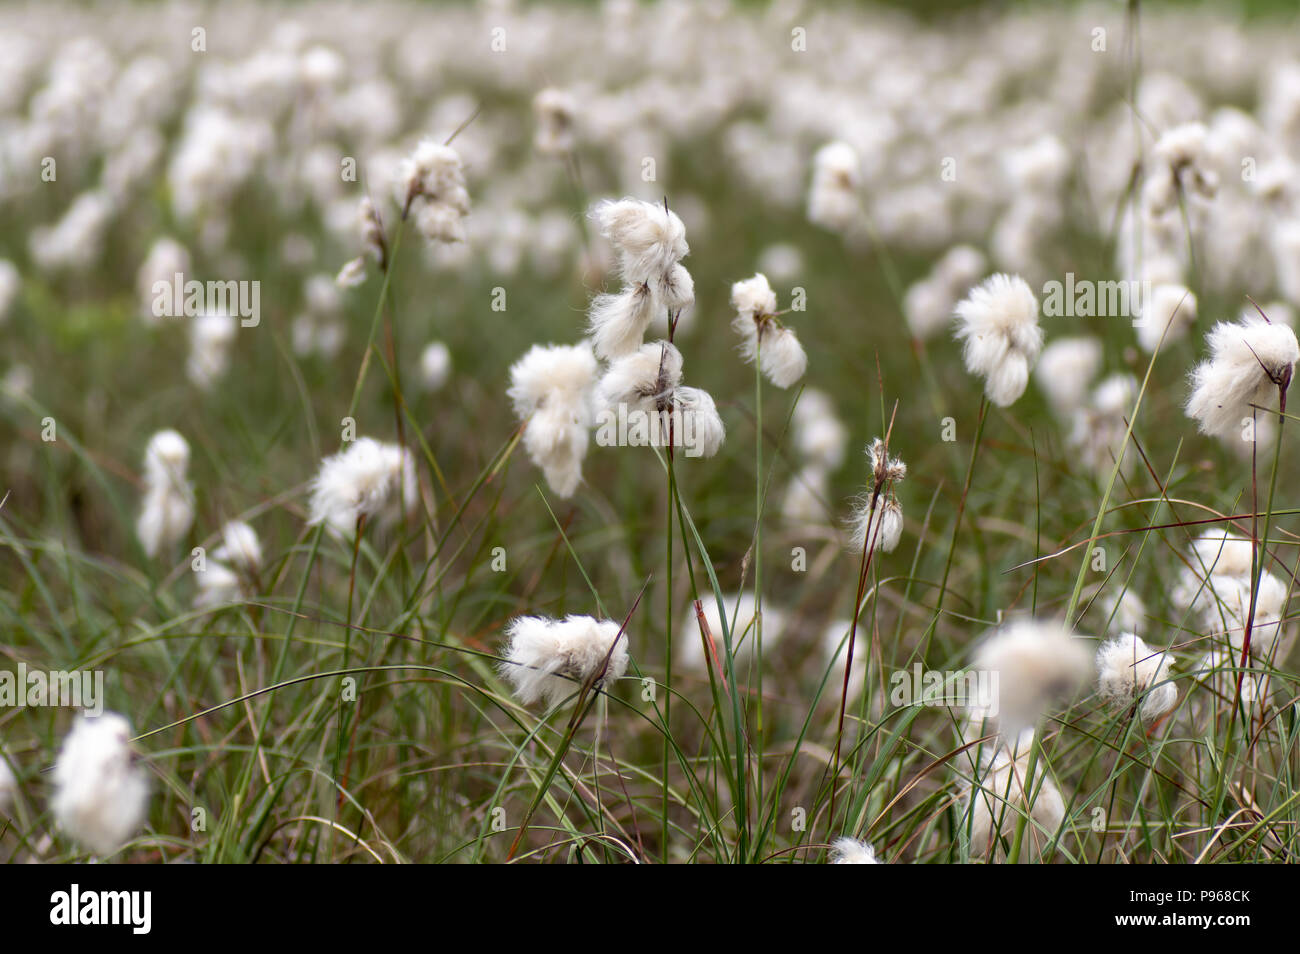 Gemeinsame Wollgras (Eriophorum angustifolium) in Saatgut. Segge in der Familie Cyperaceae, mit weißer Baumwolle - wie Fäden, die das Aussehen von Baumwolle Stockfoto